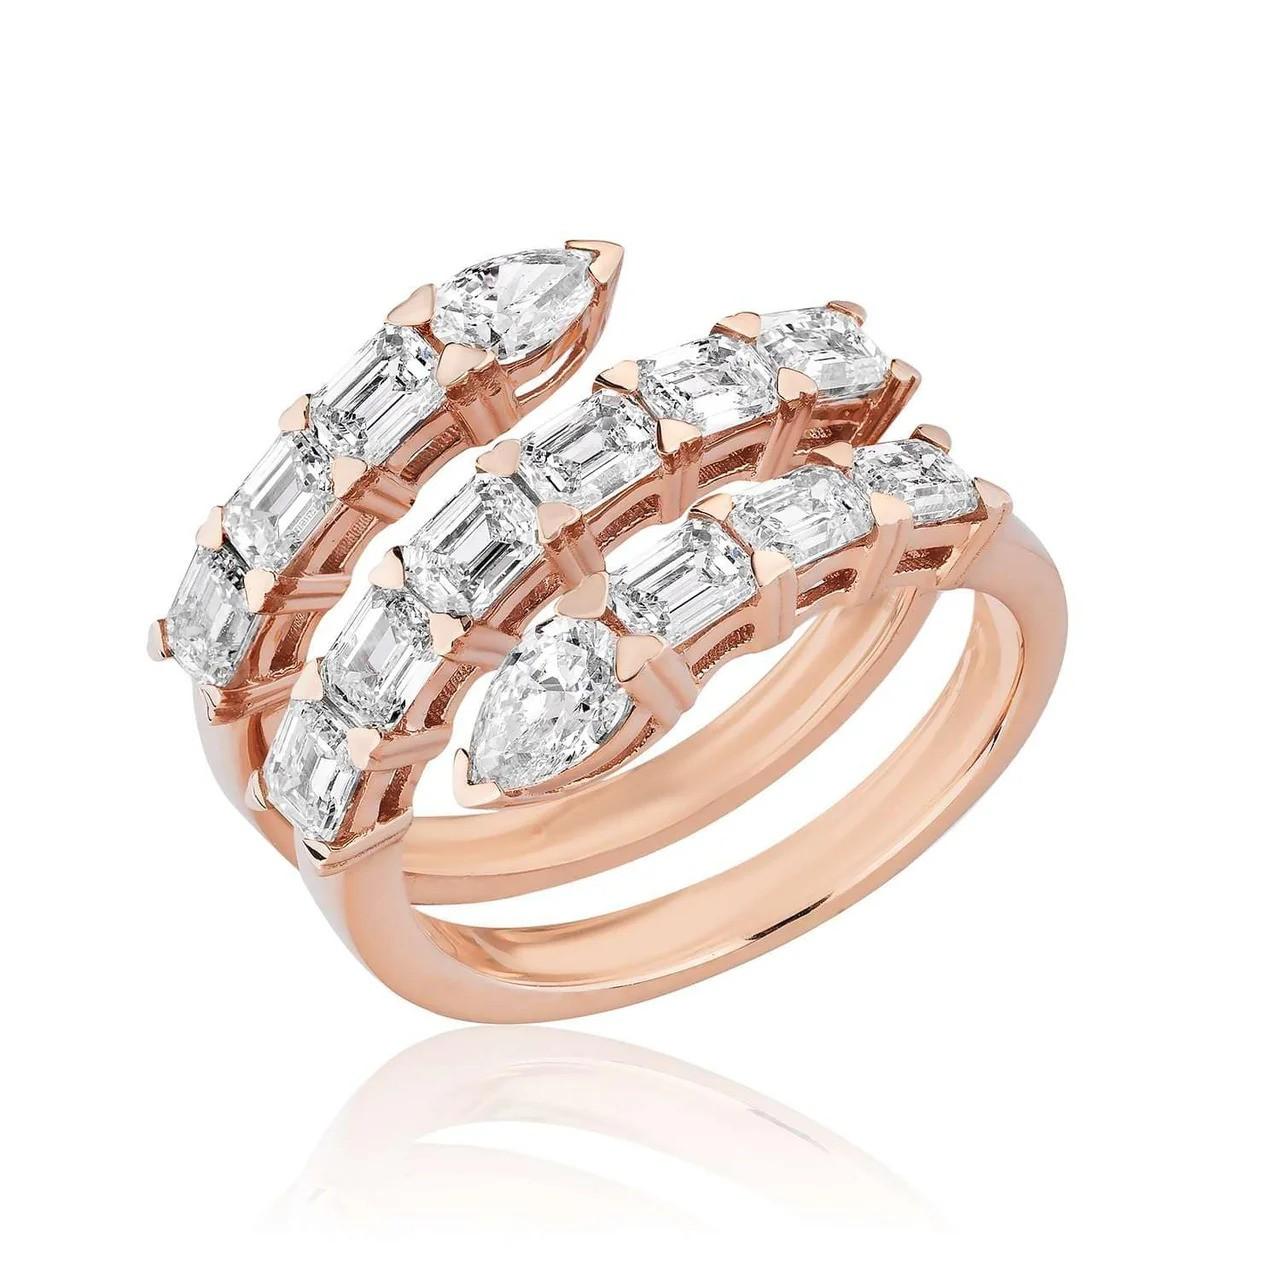 Unser exquisiter Ring mit Diamantbesatz aus Roségold ist eine Mischung aus zeitloser Eleganz und modernem Stil, die jedem Look einen Hauch von Raffinesse verleiht. 
Dieser Ring aus luxuriösem 18-karätigem Roségold hat ein feminines Design, das sich